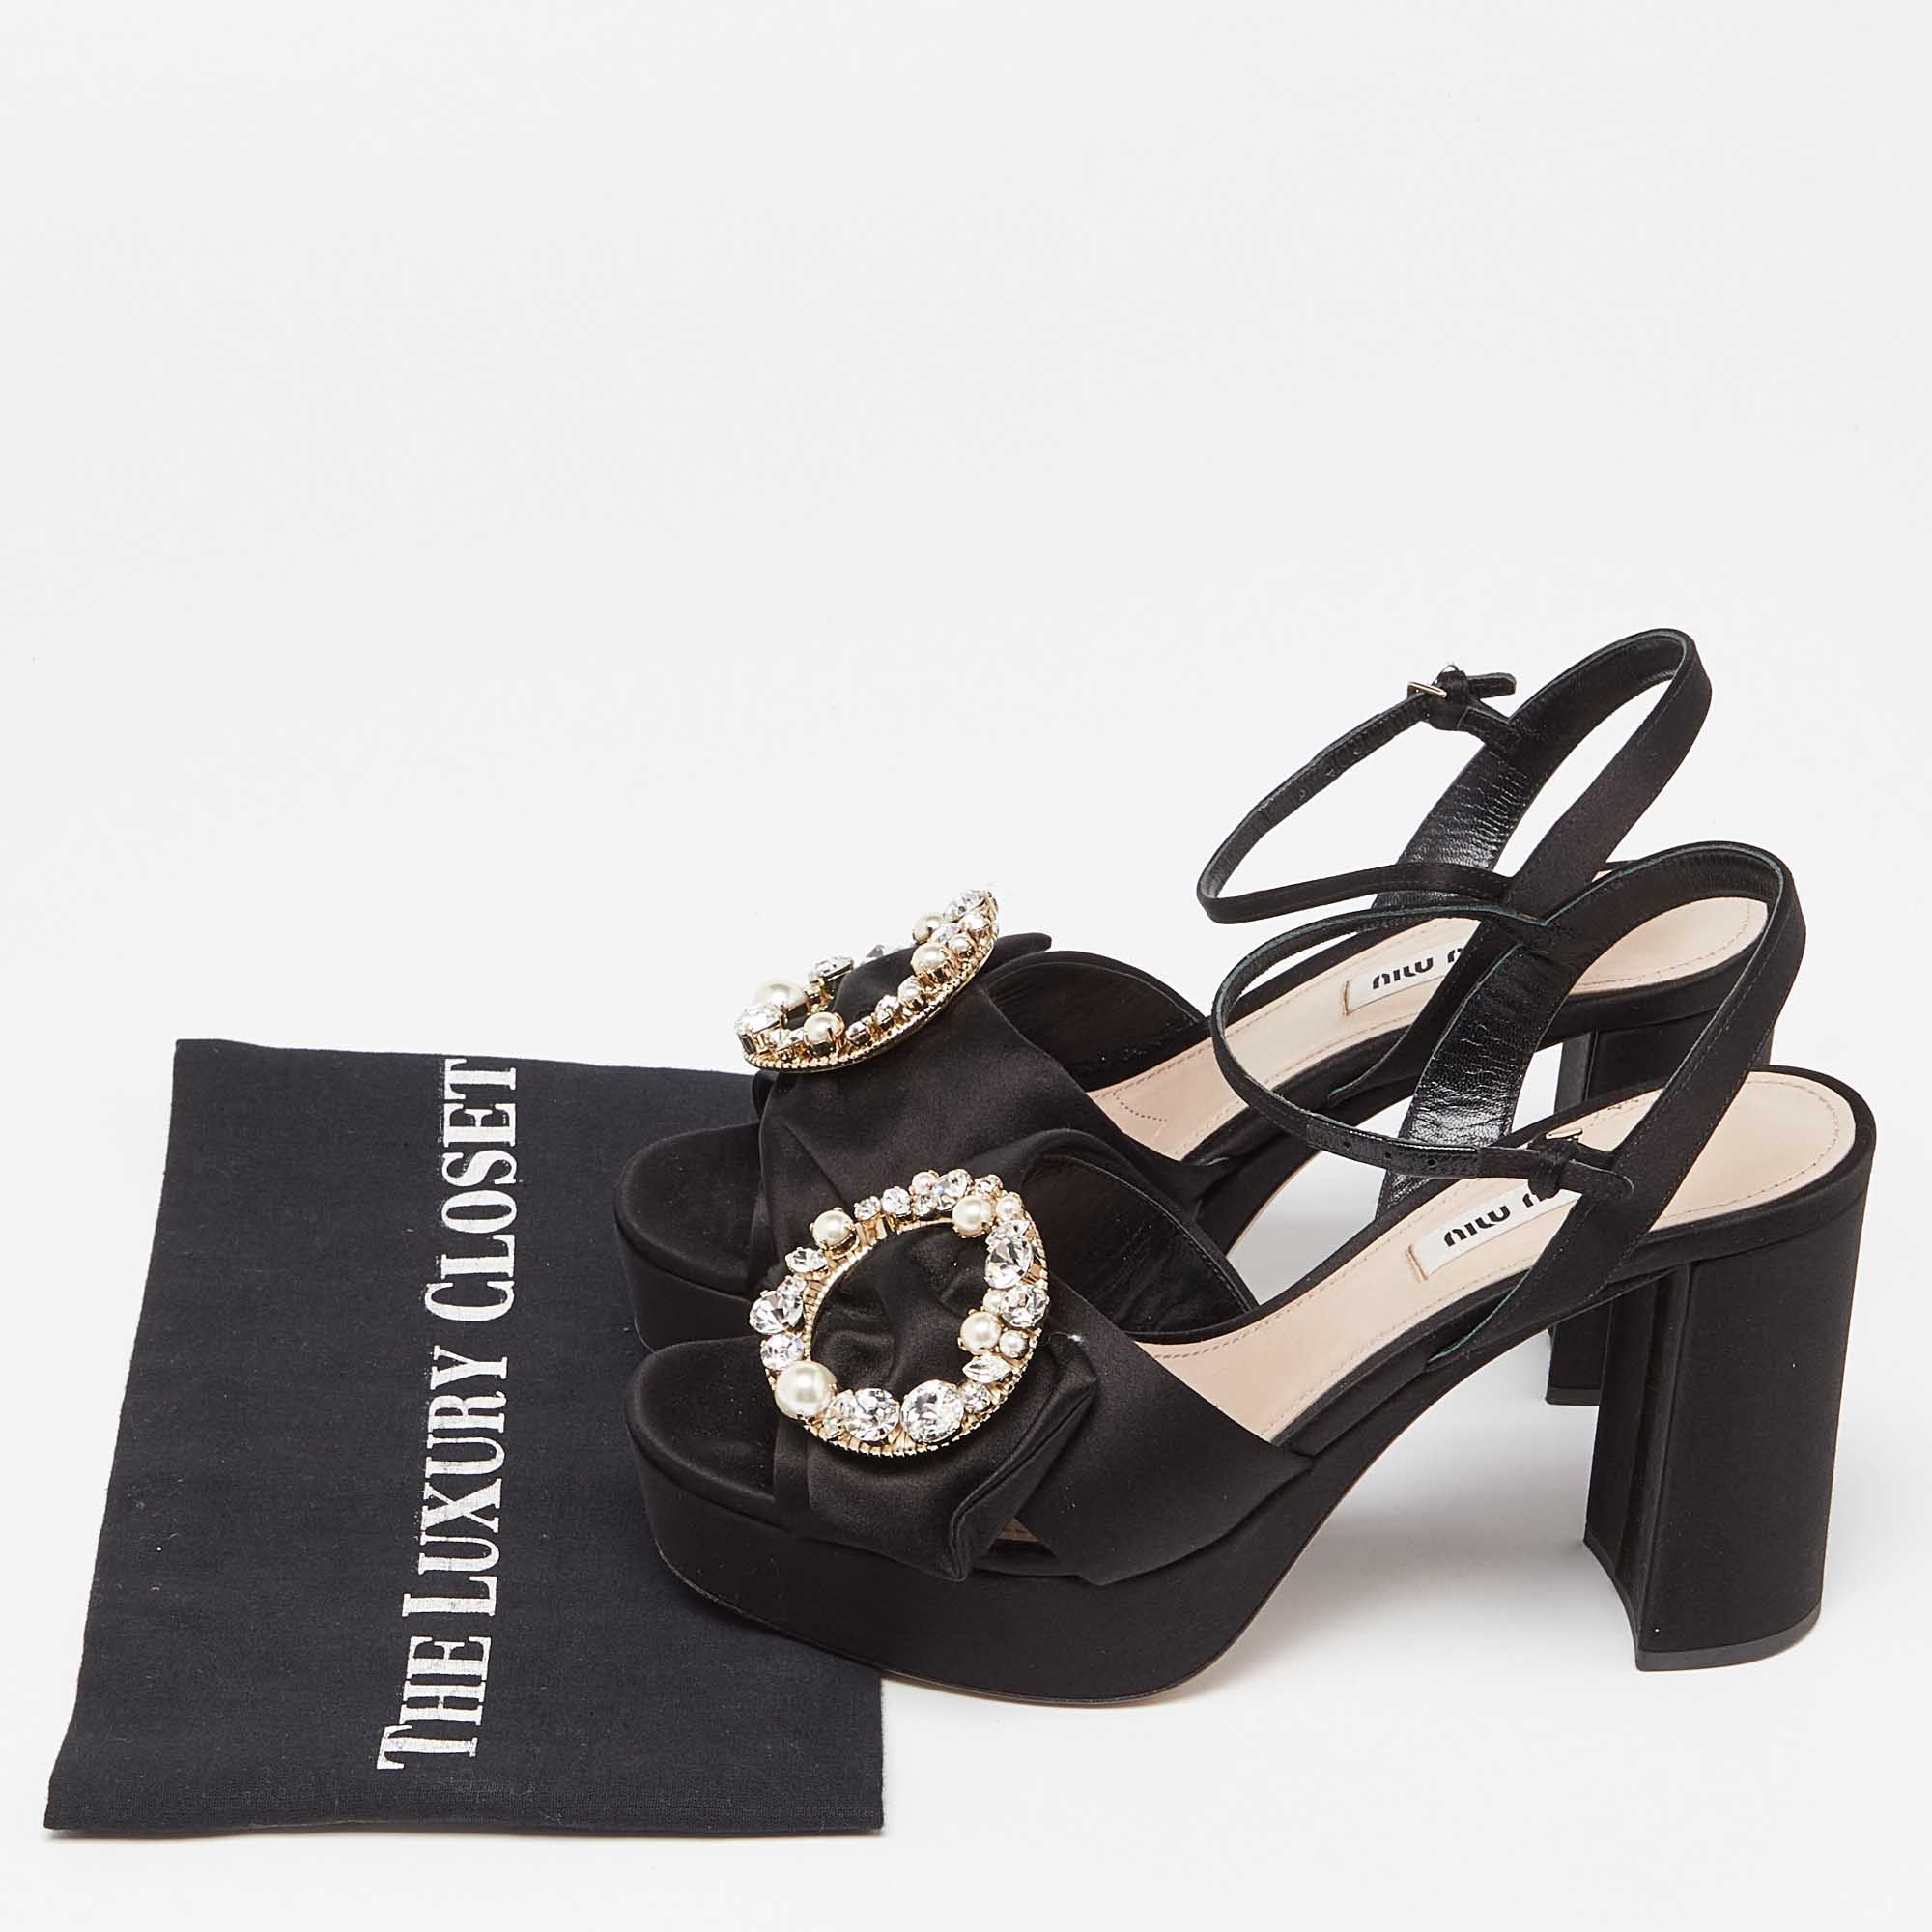 Miu Miu Black Satin Crystal Embellished Block Heel Ankle Strap Platform Sandals Size 39